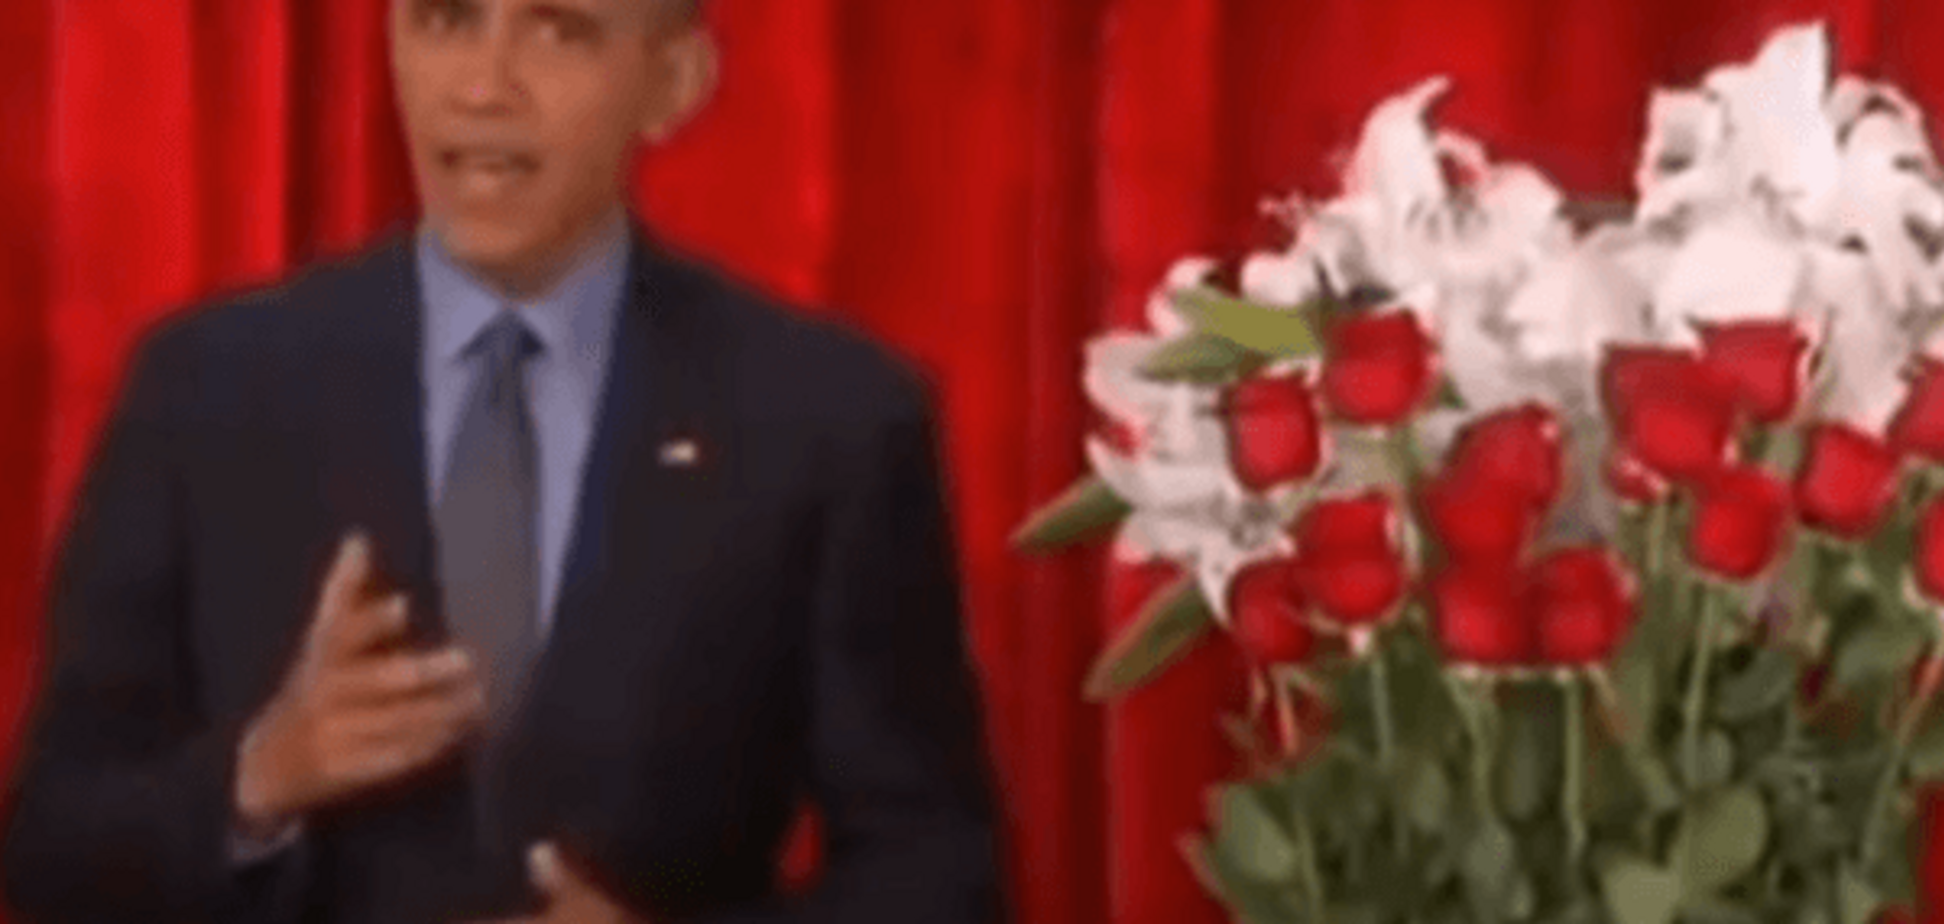 Обама в эфире шоу поздравил жену с Днем Валентина: видеофакт